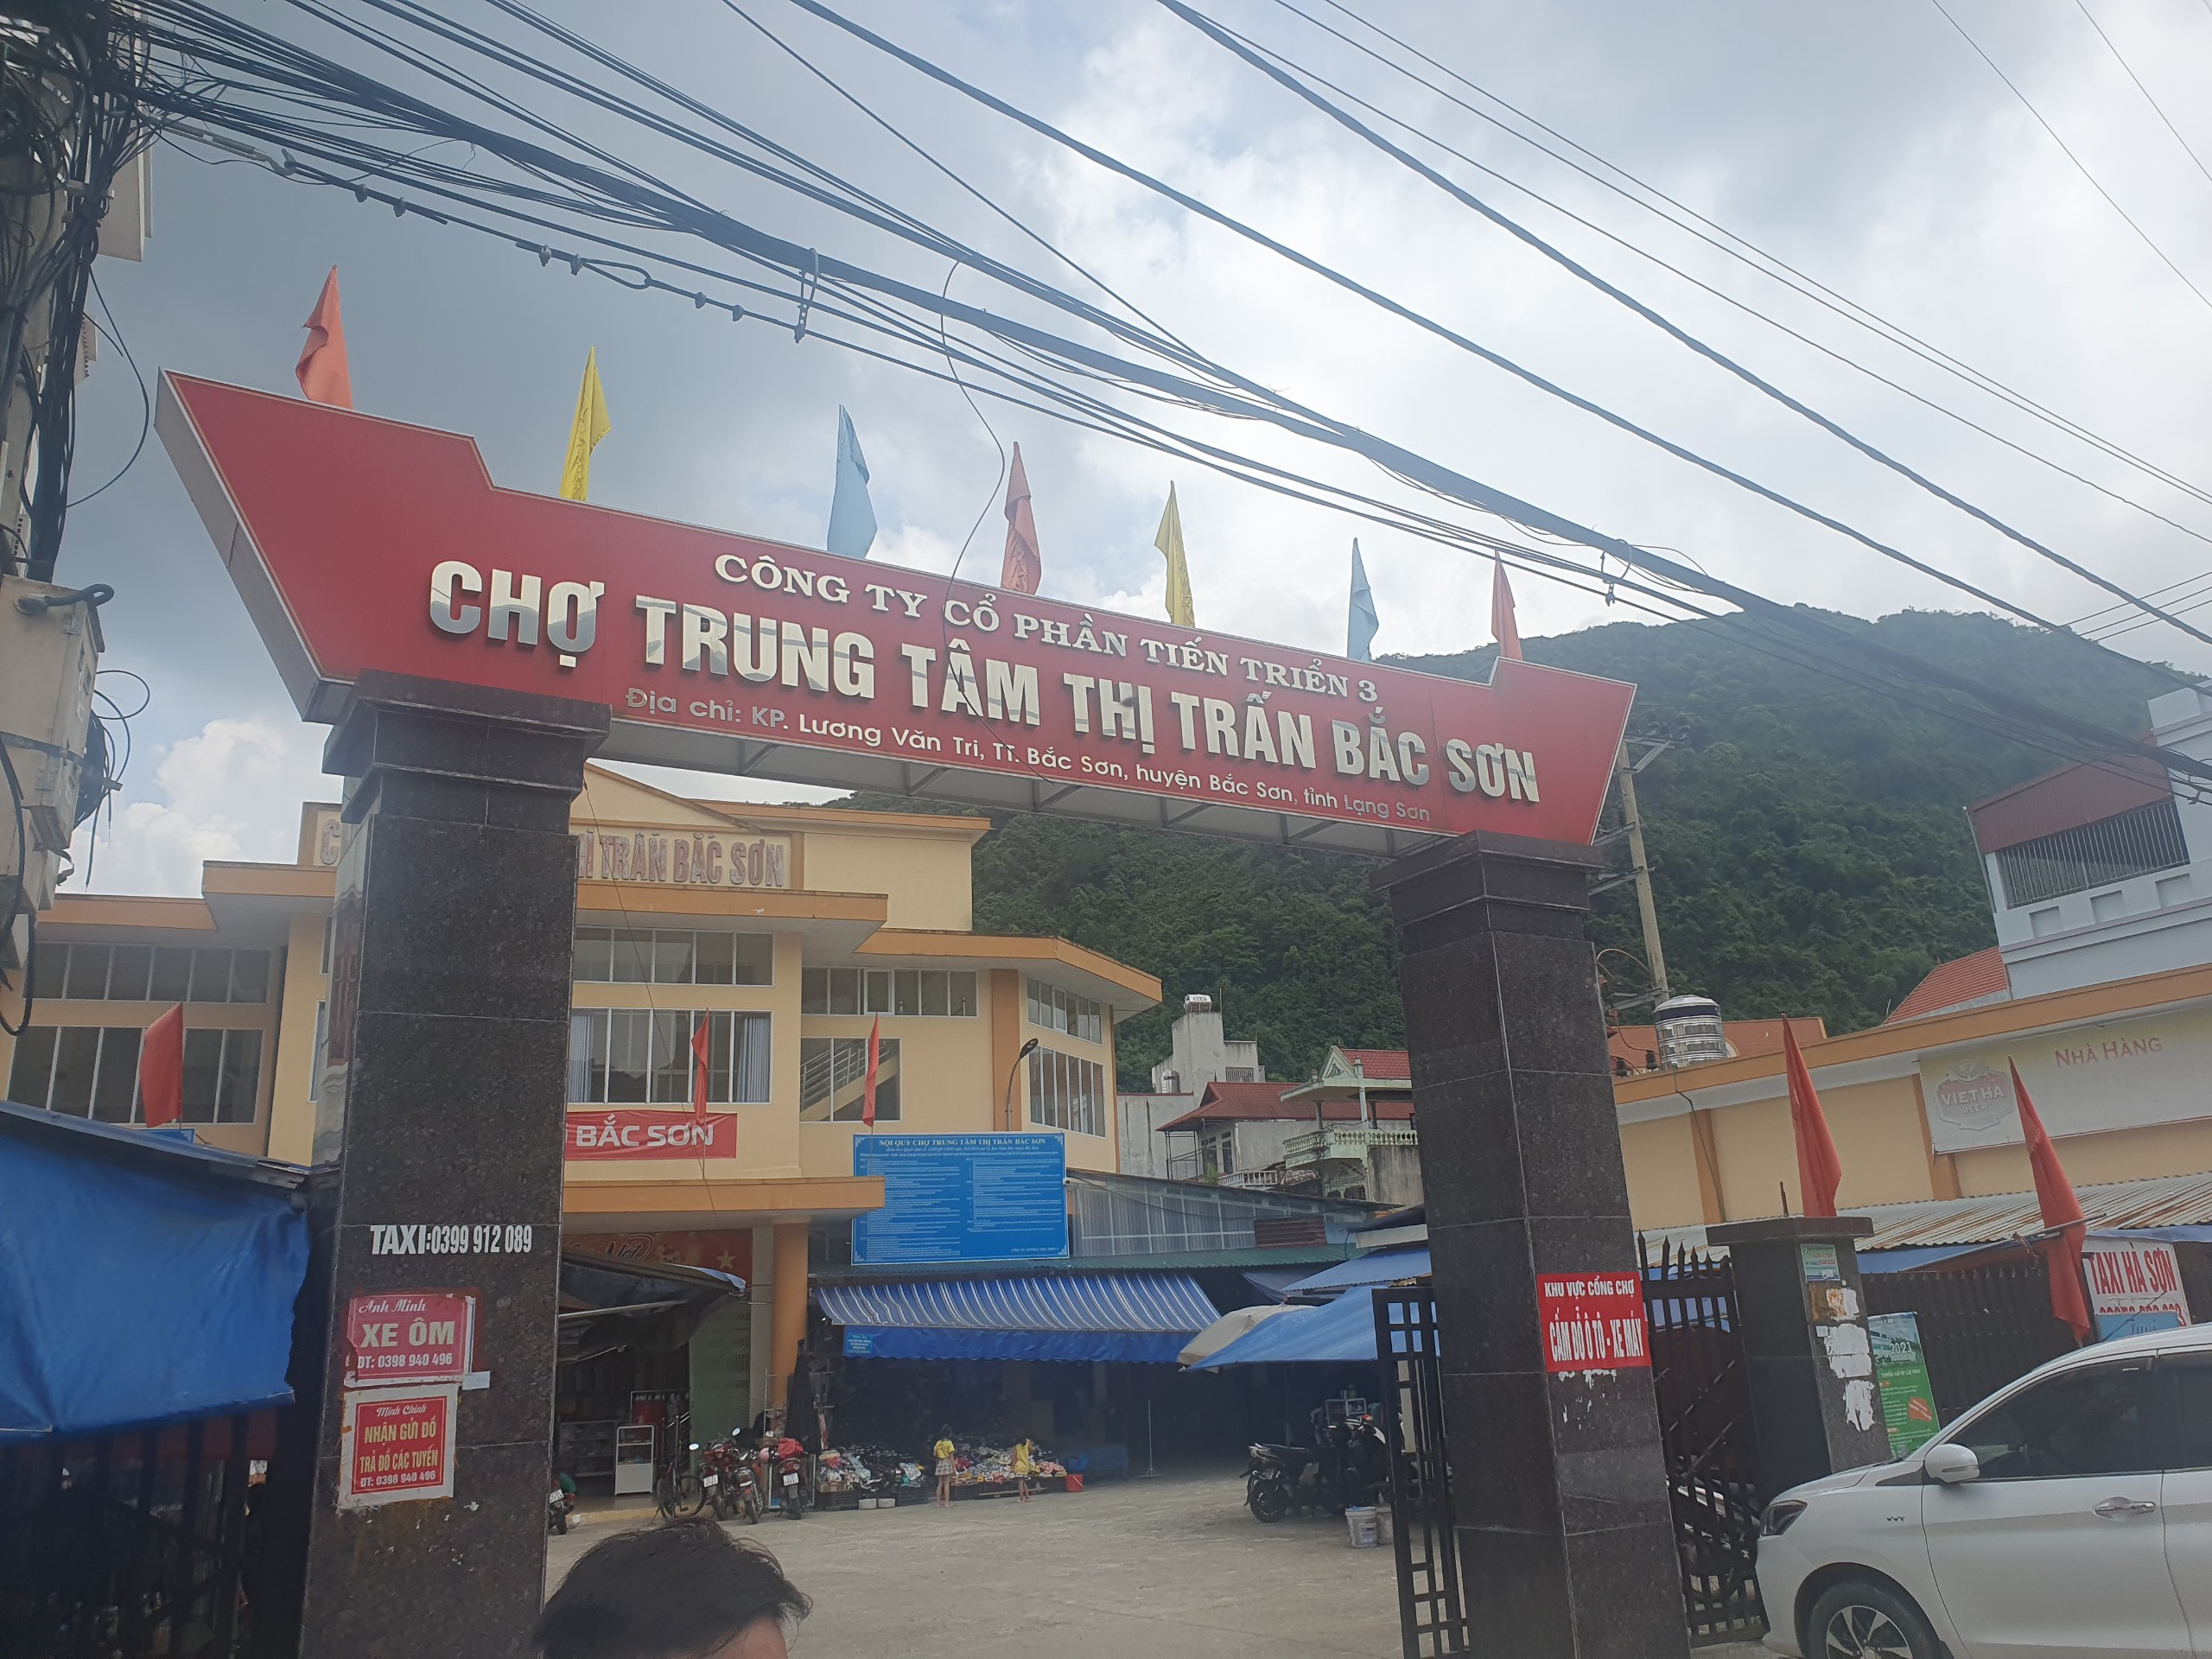 Chợ Trung tâm thị trấn Bắc Sơn thuộc huyện Bắc Sơn, tỉnh Lạng Sơn do Công ty CP Tiến Triển 3 làm chủ đầu tư.